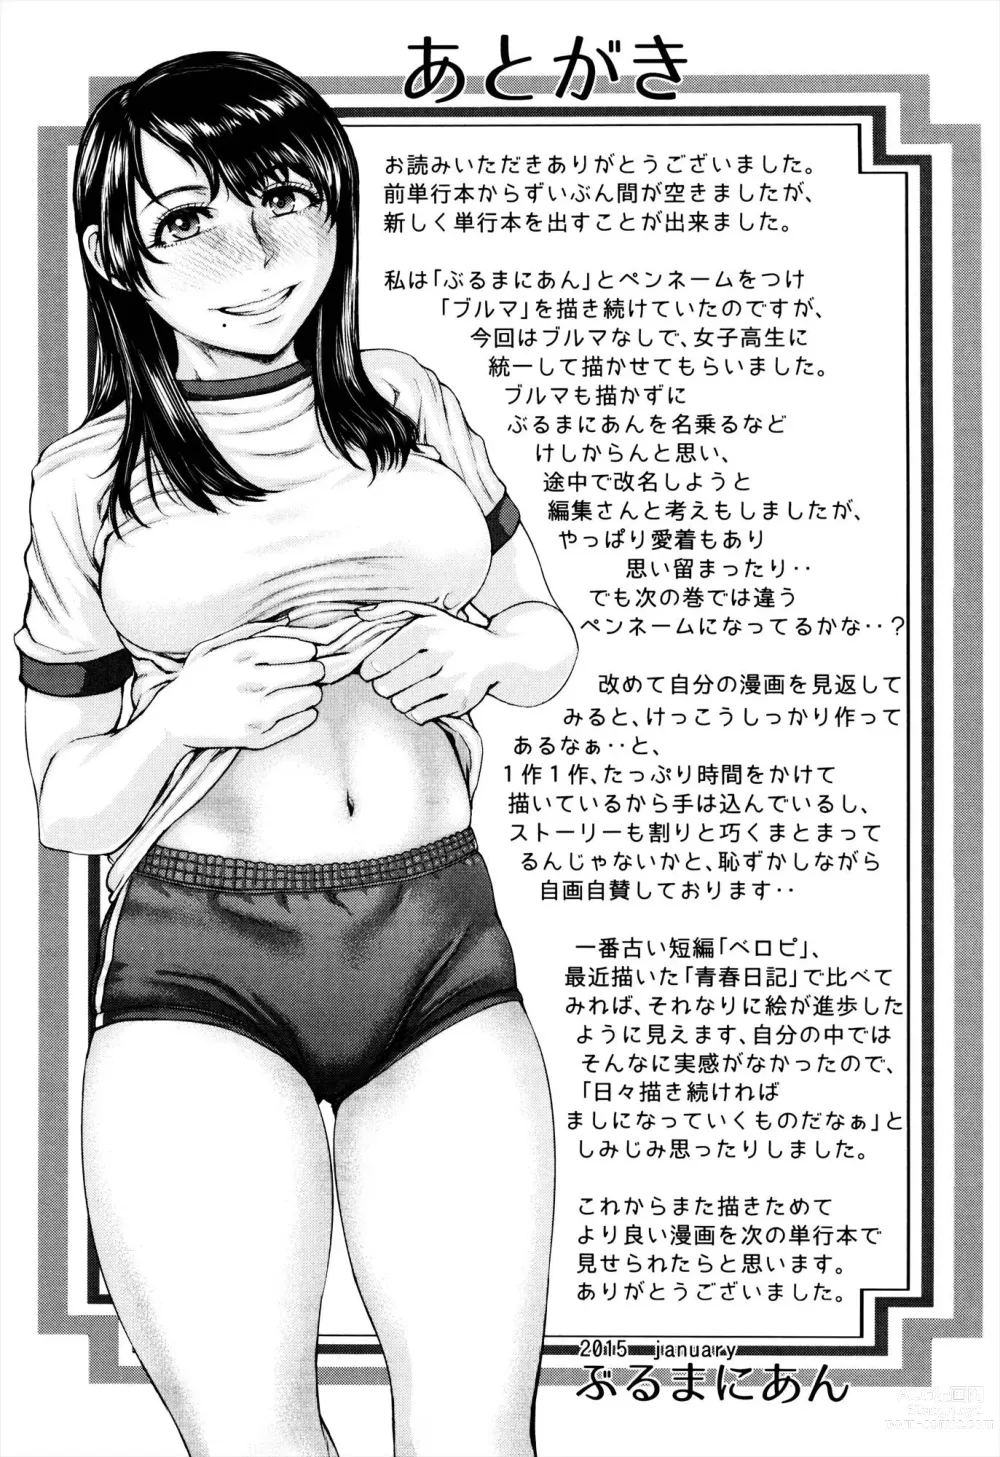 Page 217 of manga Se-Syun Sakari